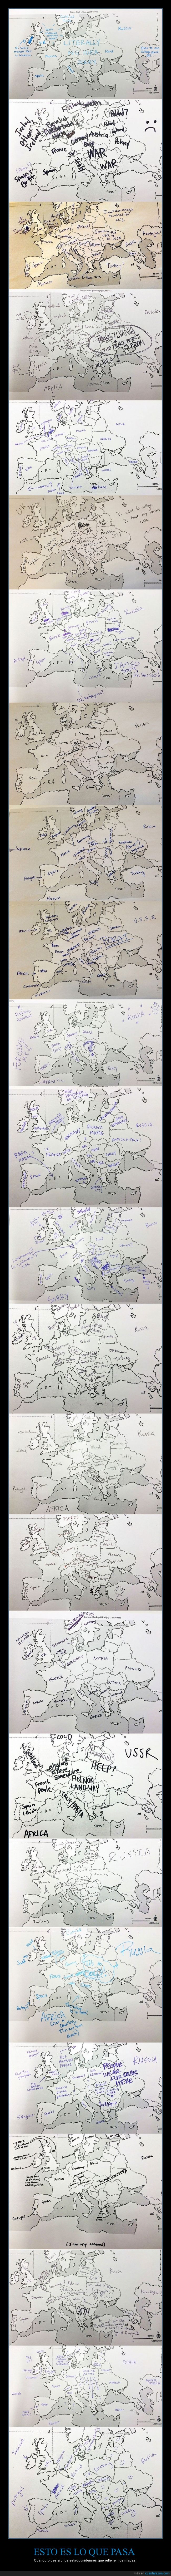 mapa,pais,ignorante,españa siempre bien puesta,europa,rusia,inventar